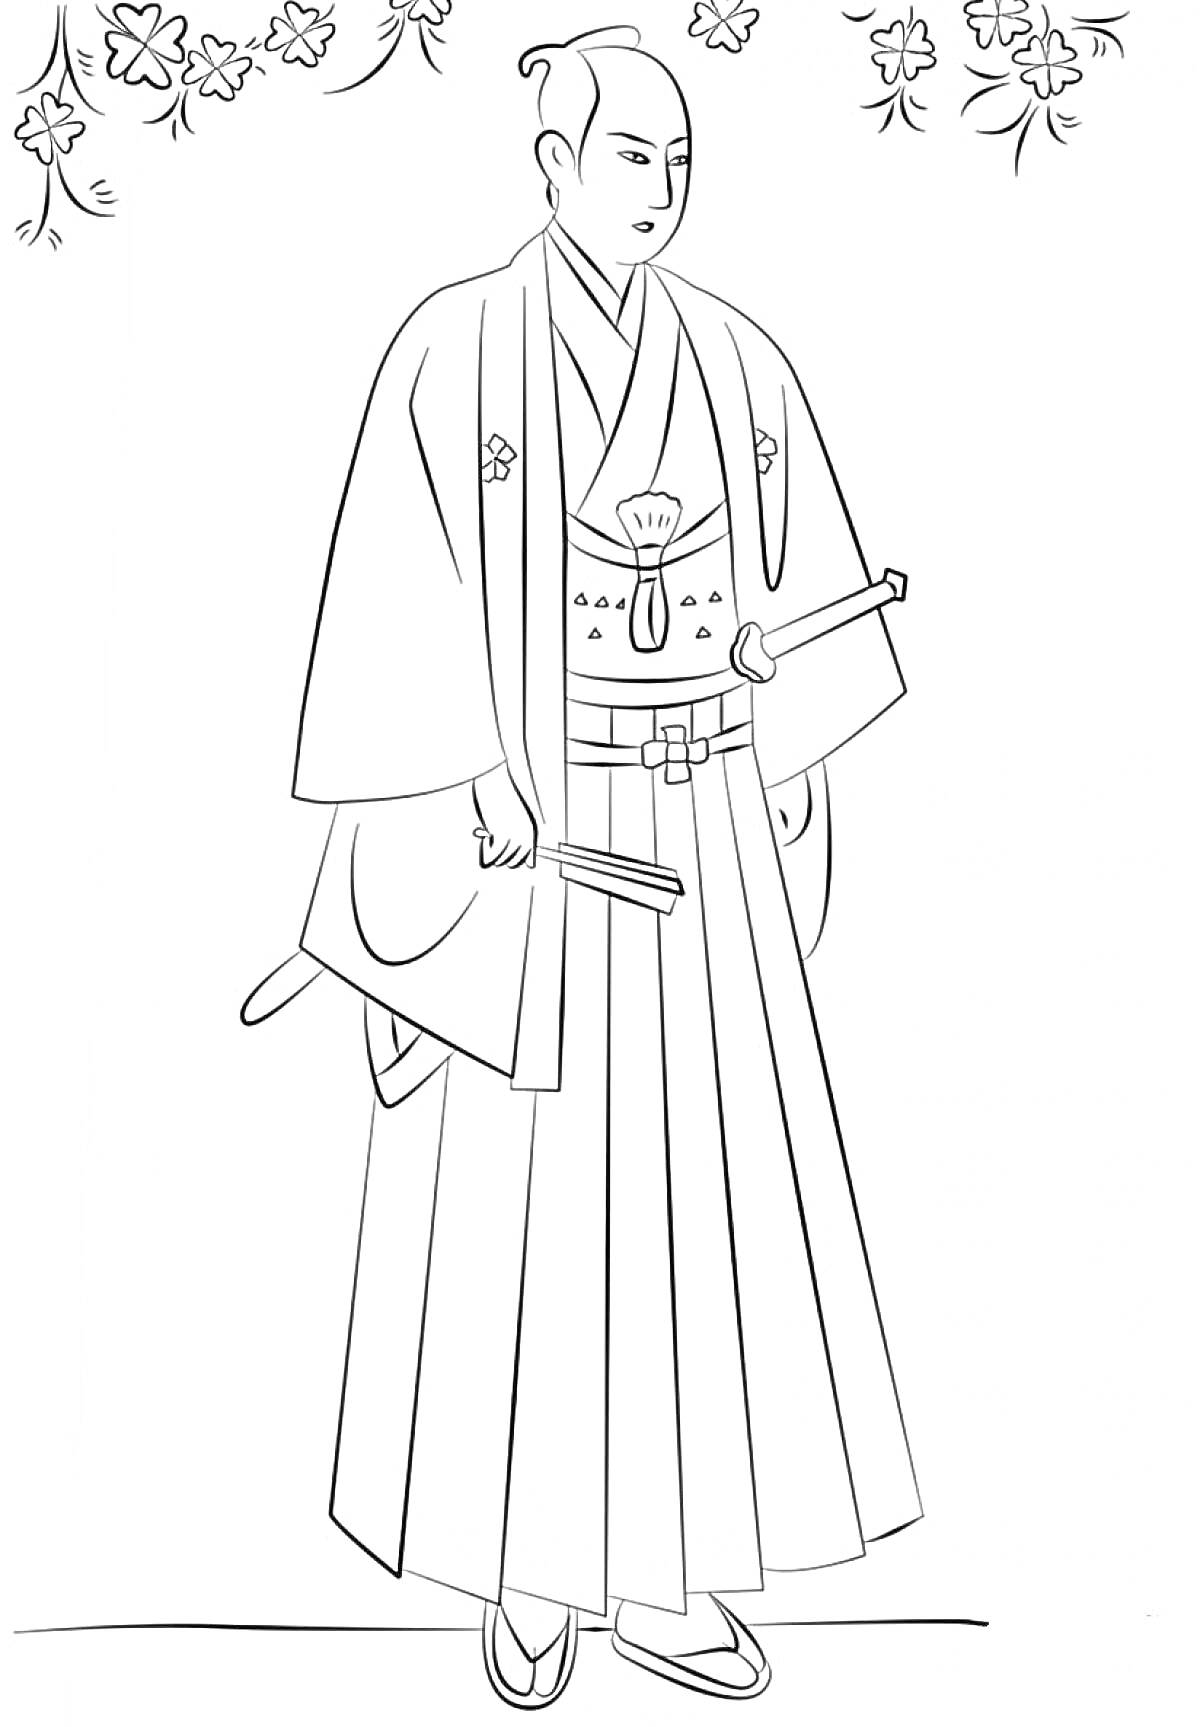 Раскраска Самурай в традиционной японской одежде с мечами на фоне сакуры